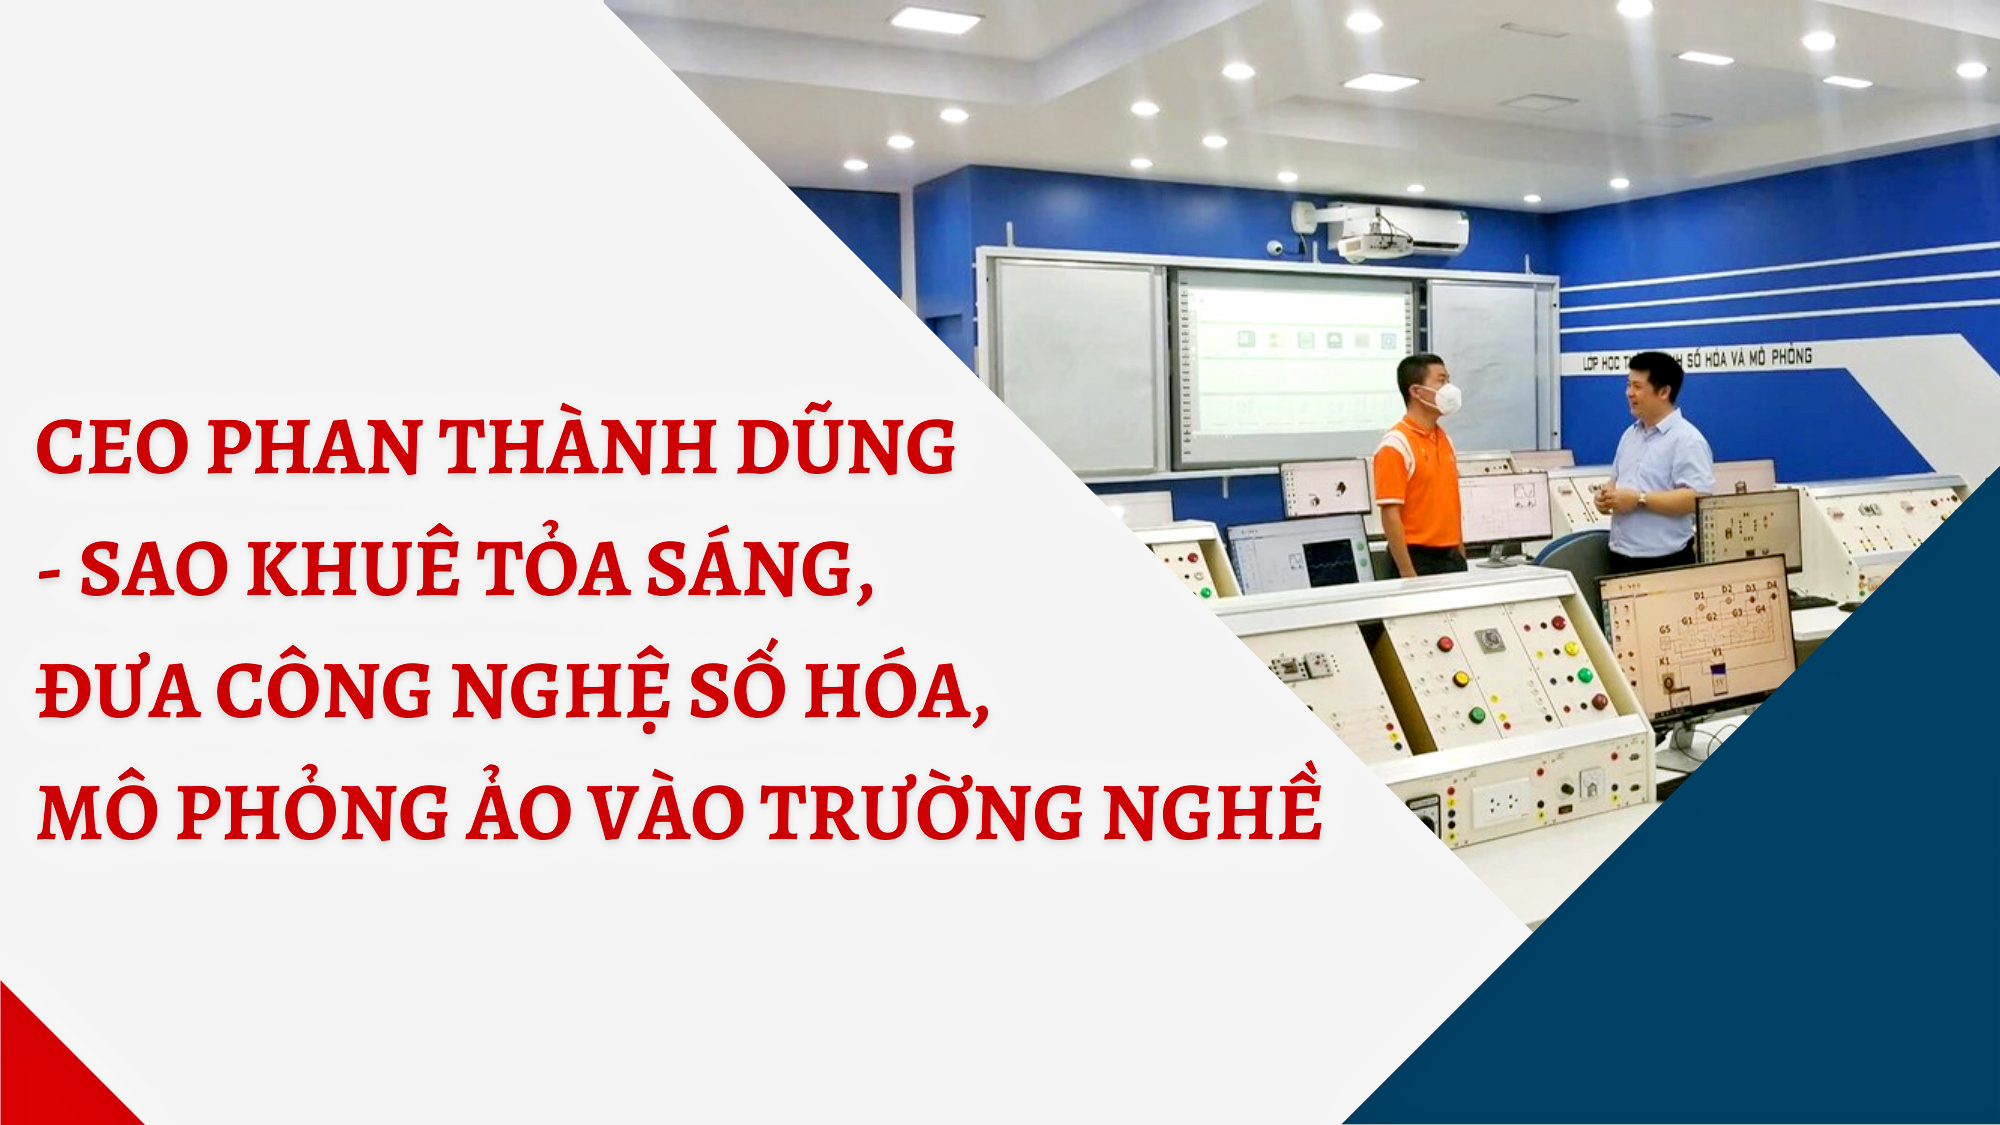 Ceo Phan Thành Dũng - Sao khuê tỏa sáng, đưa công nghệ số hóa, mô phỏng ảo vào trường nghề